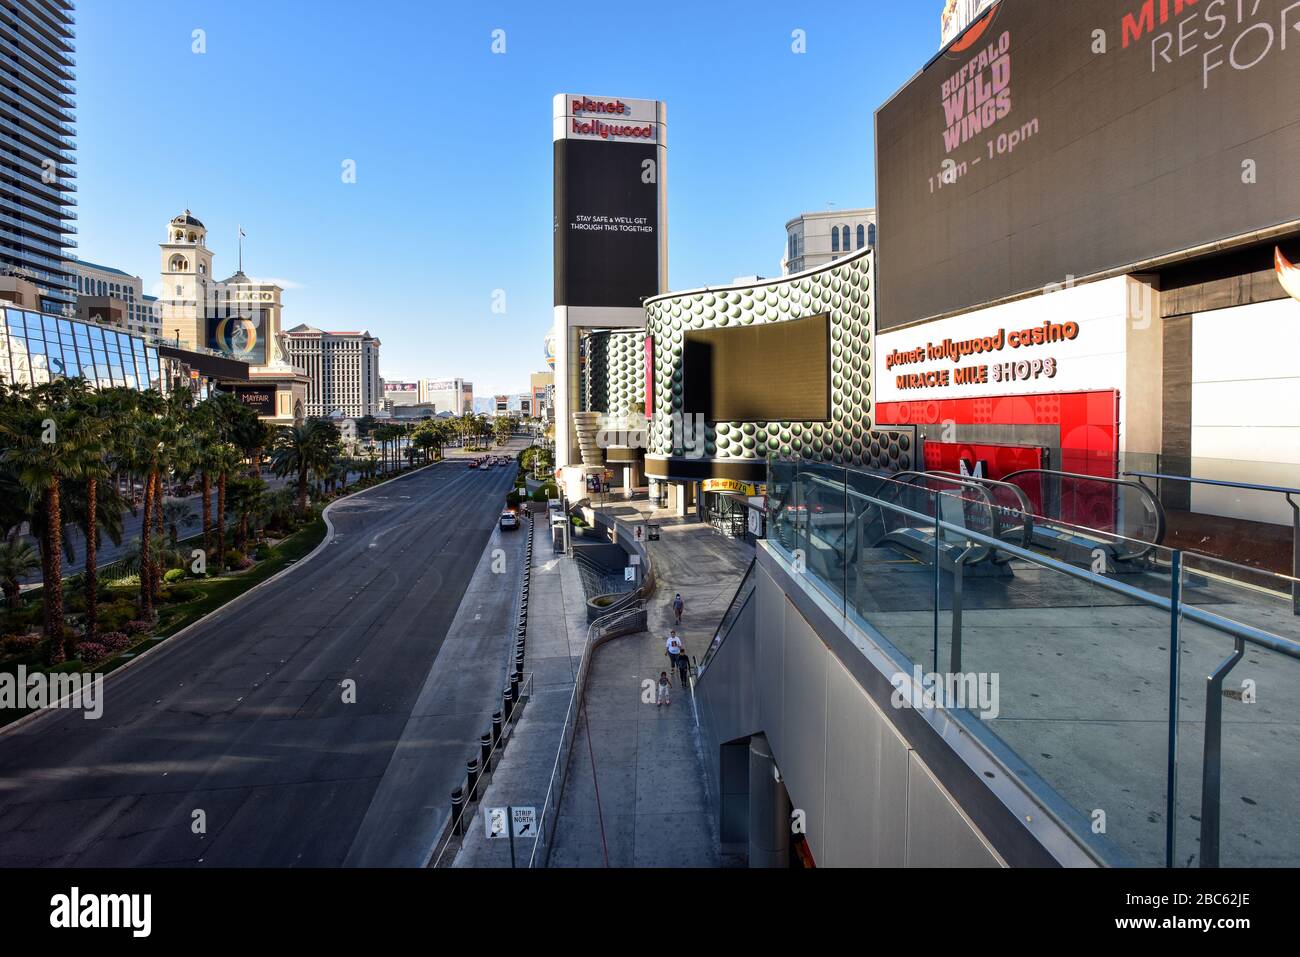 La fermeture de Las Vegas en raison de Coronavirus, le Strip est assez vide. Pas de gens dans la rue et tout est fermé. Banque D'Images